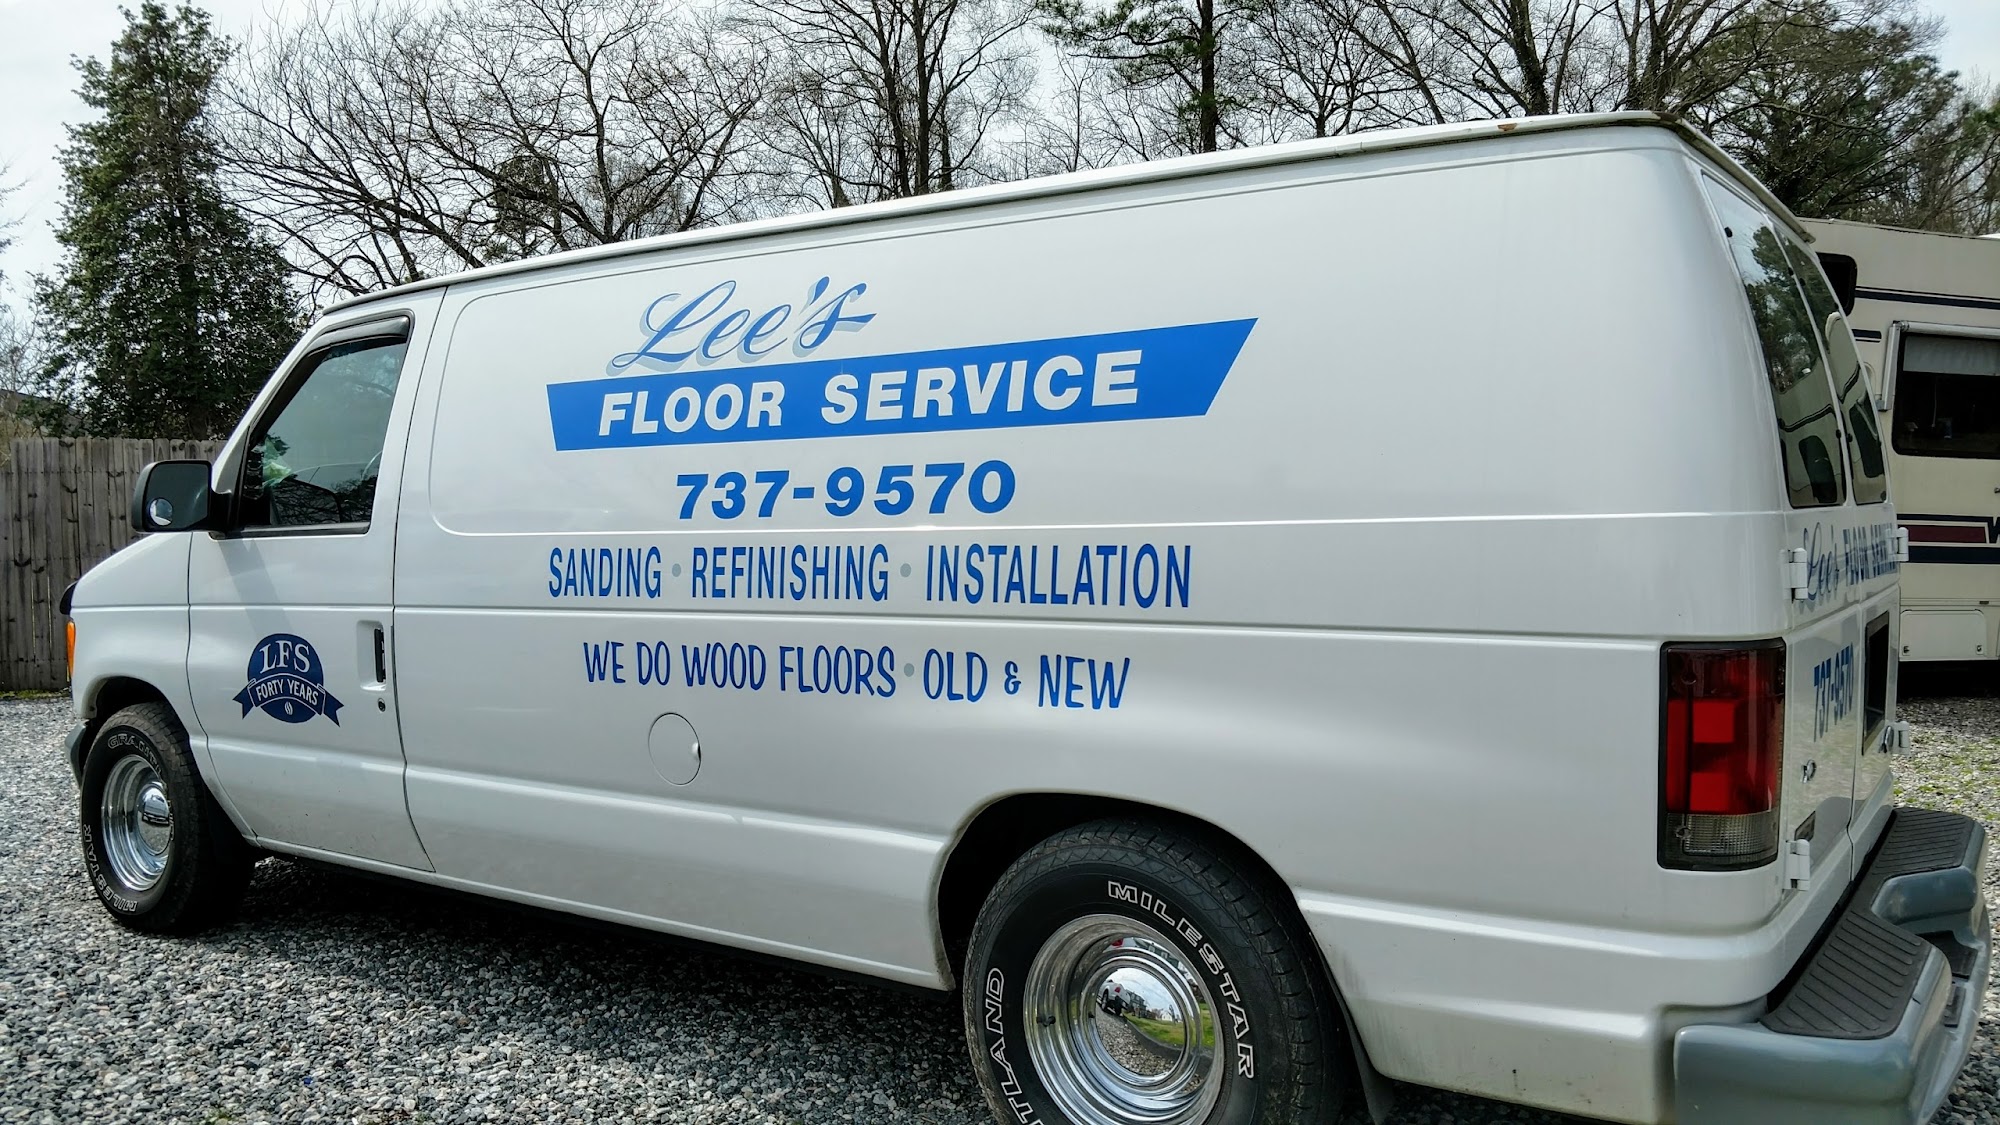 Lee's Floor Service